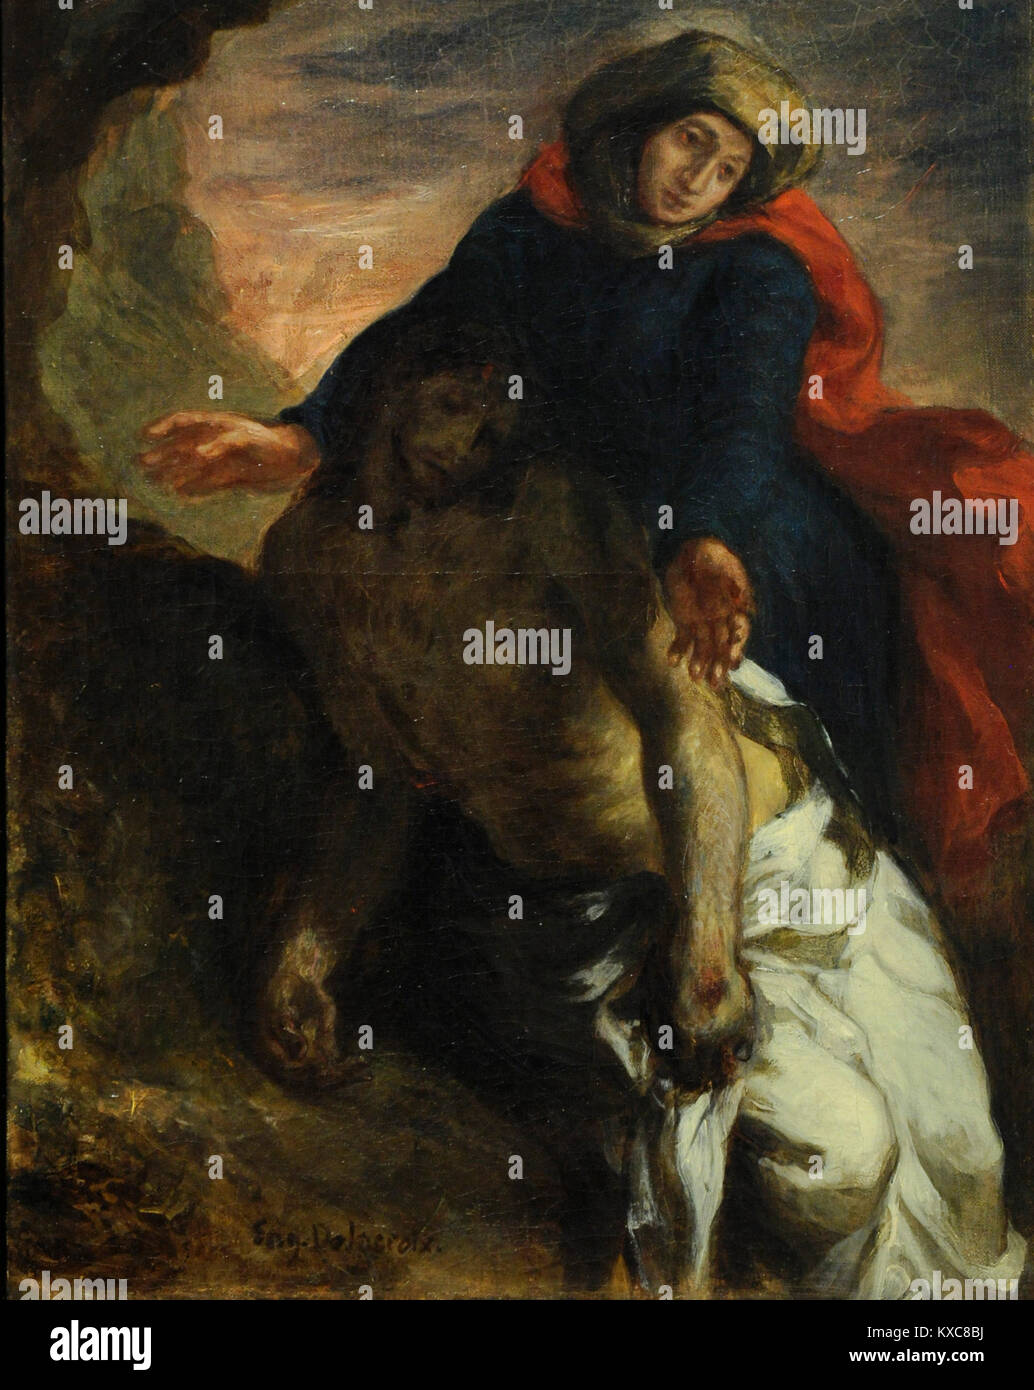 Eugène Delacroix (1798-1863). Le peintre français. Pieta, 1850. Musée national. Stockholm. La Suède. Banque D'Images